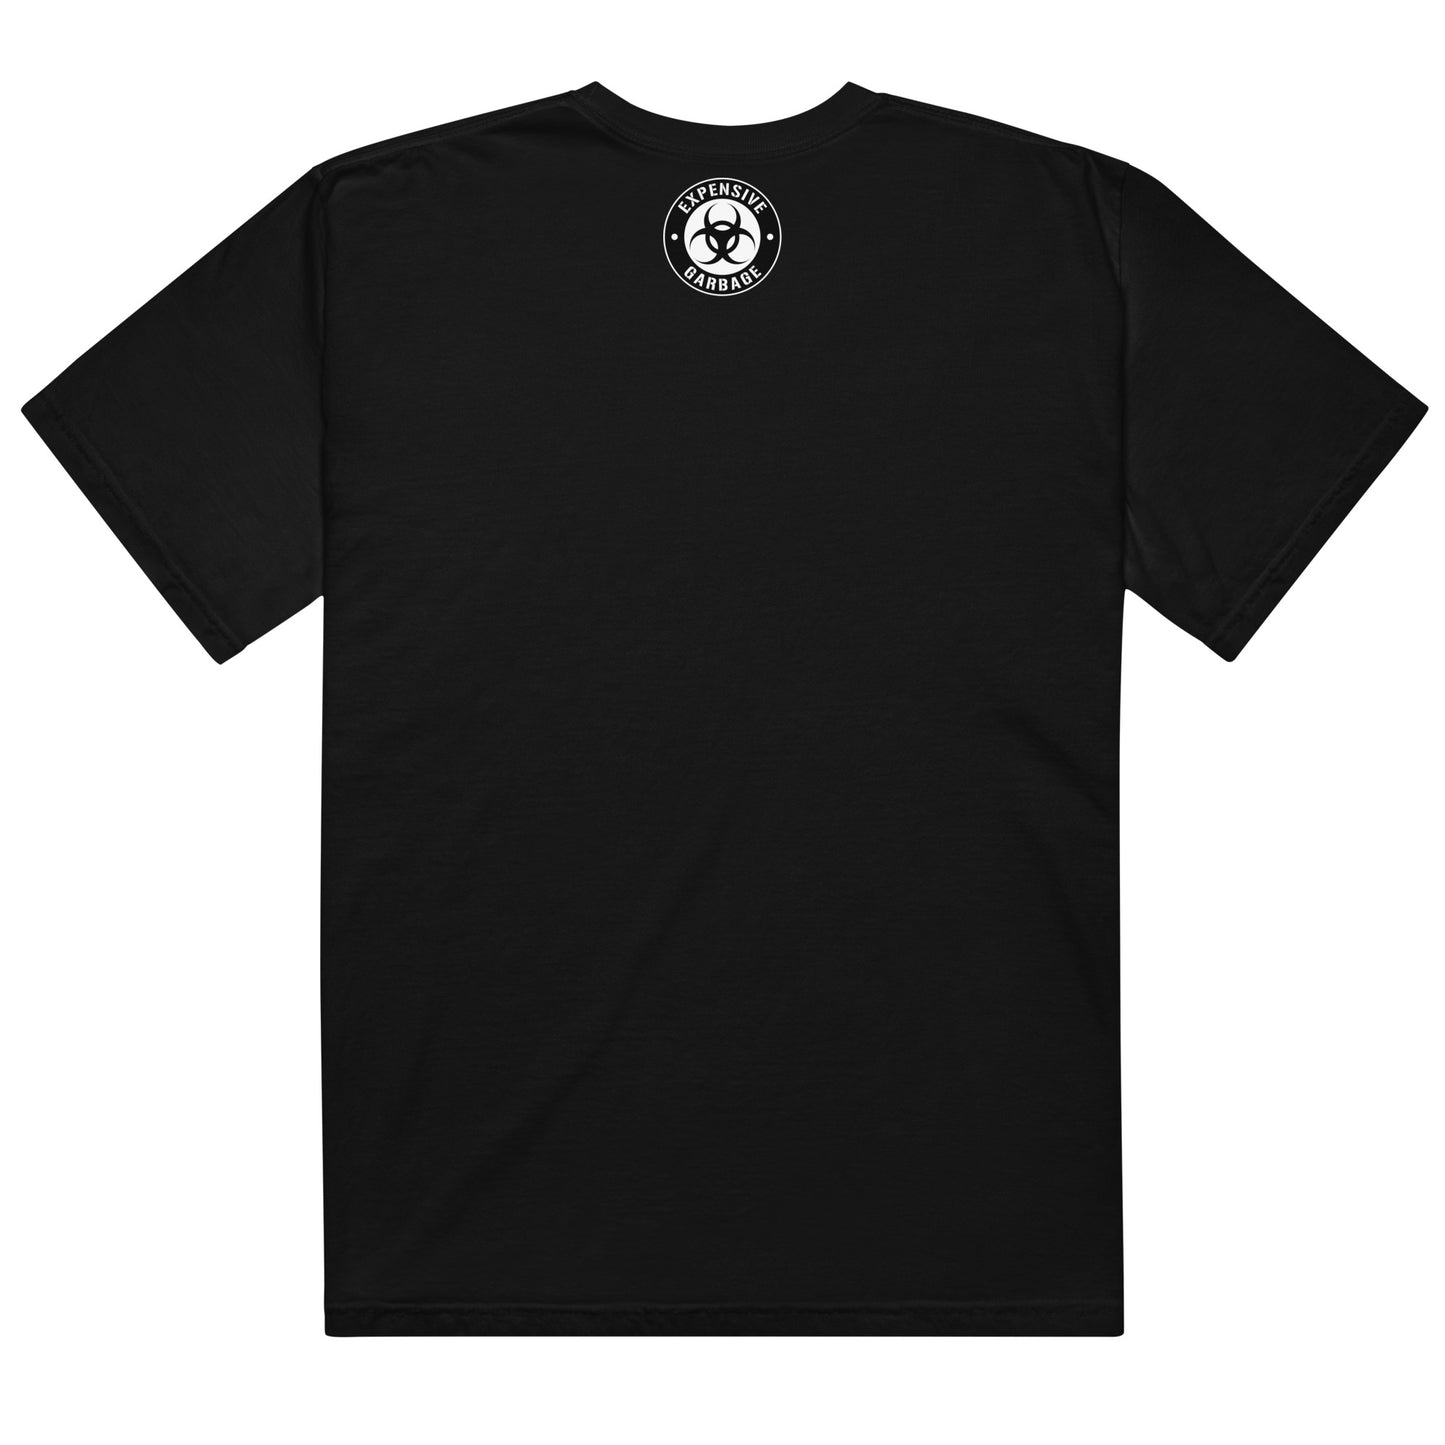 The "SKATER" T-Shirt